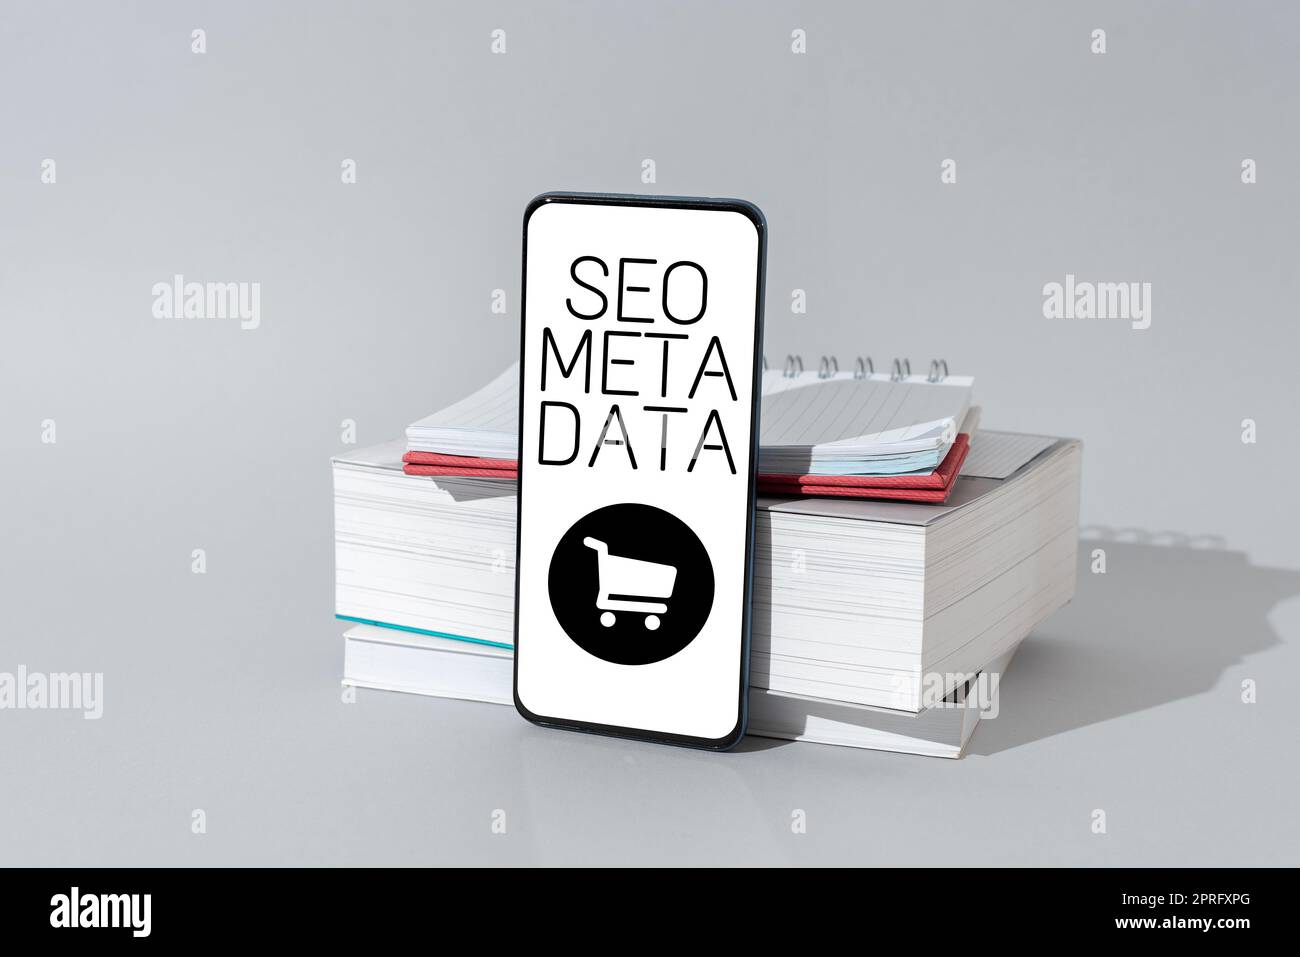 Testo che mostra l'ispirazione Seo Meta Data. Business Concept Search Engine Optimization strategia di marketing online scrivere su carta con Pencil informazioni importanti attuali. Foto Stock